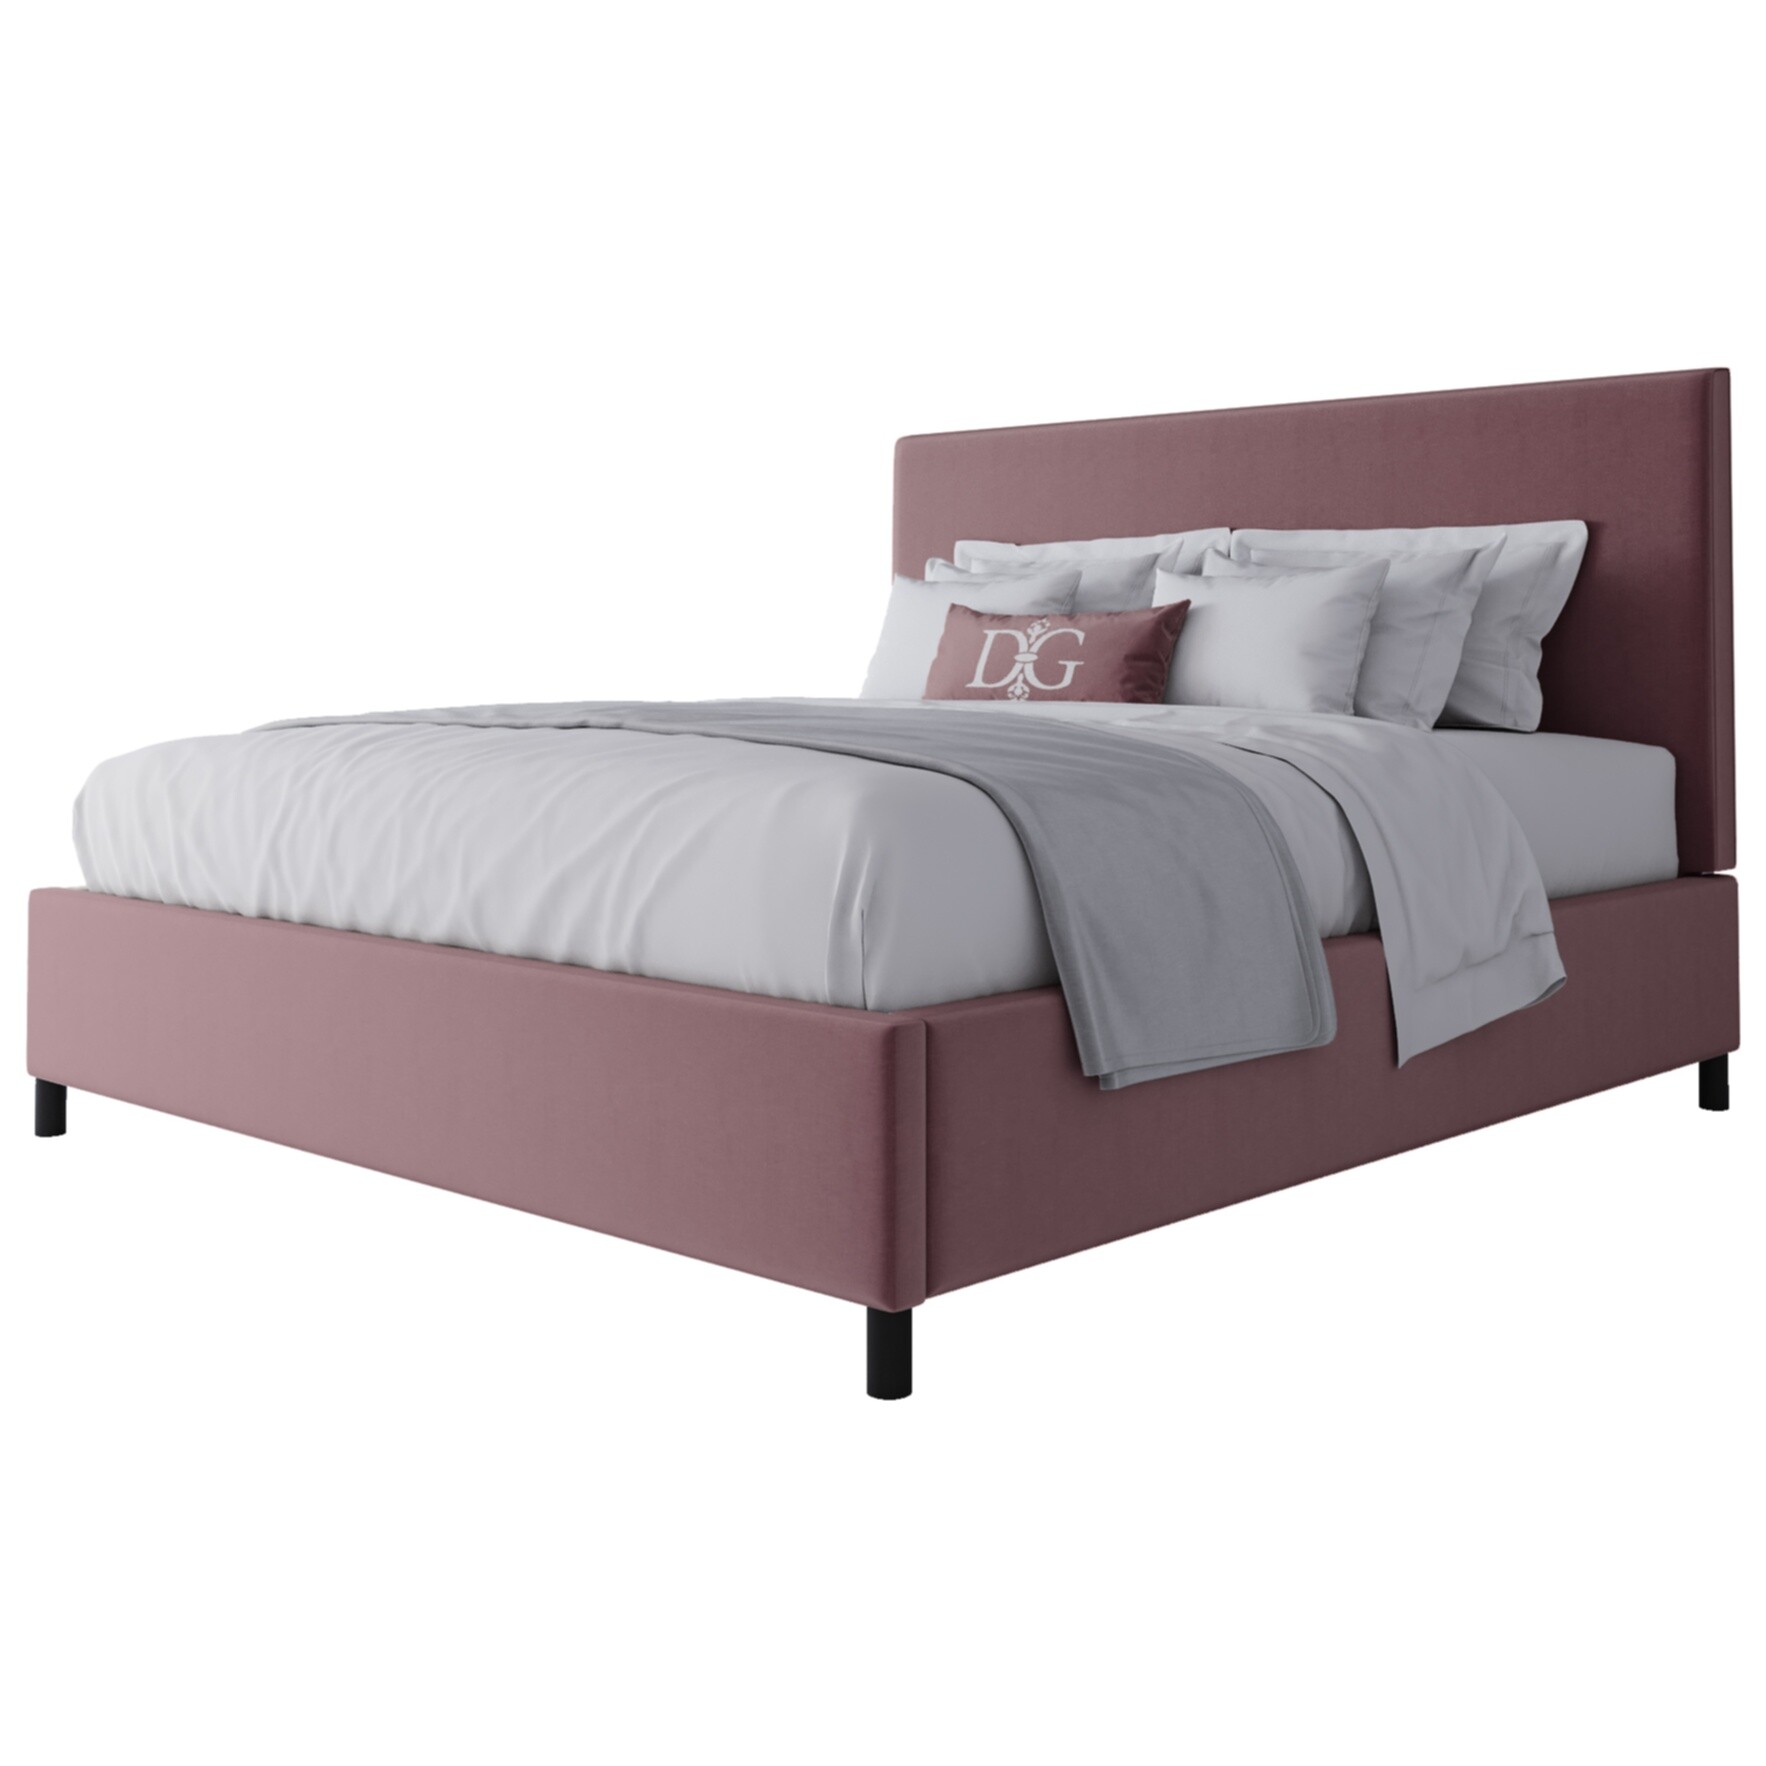 Кровать двуспальная 180х200 розовая Novac Platform